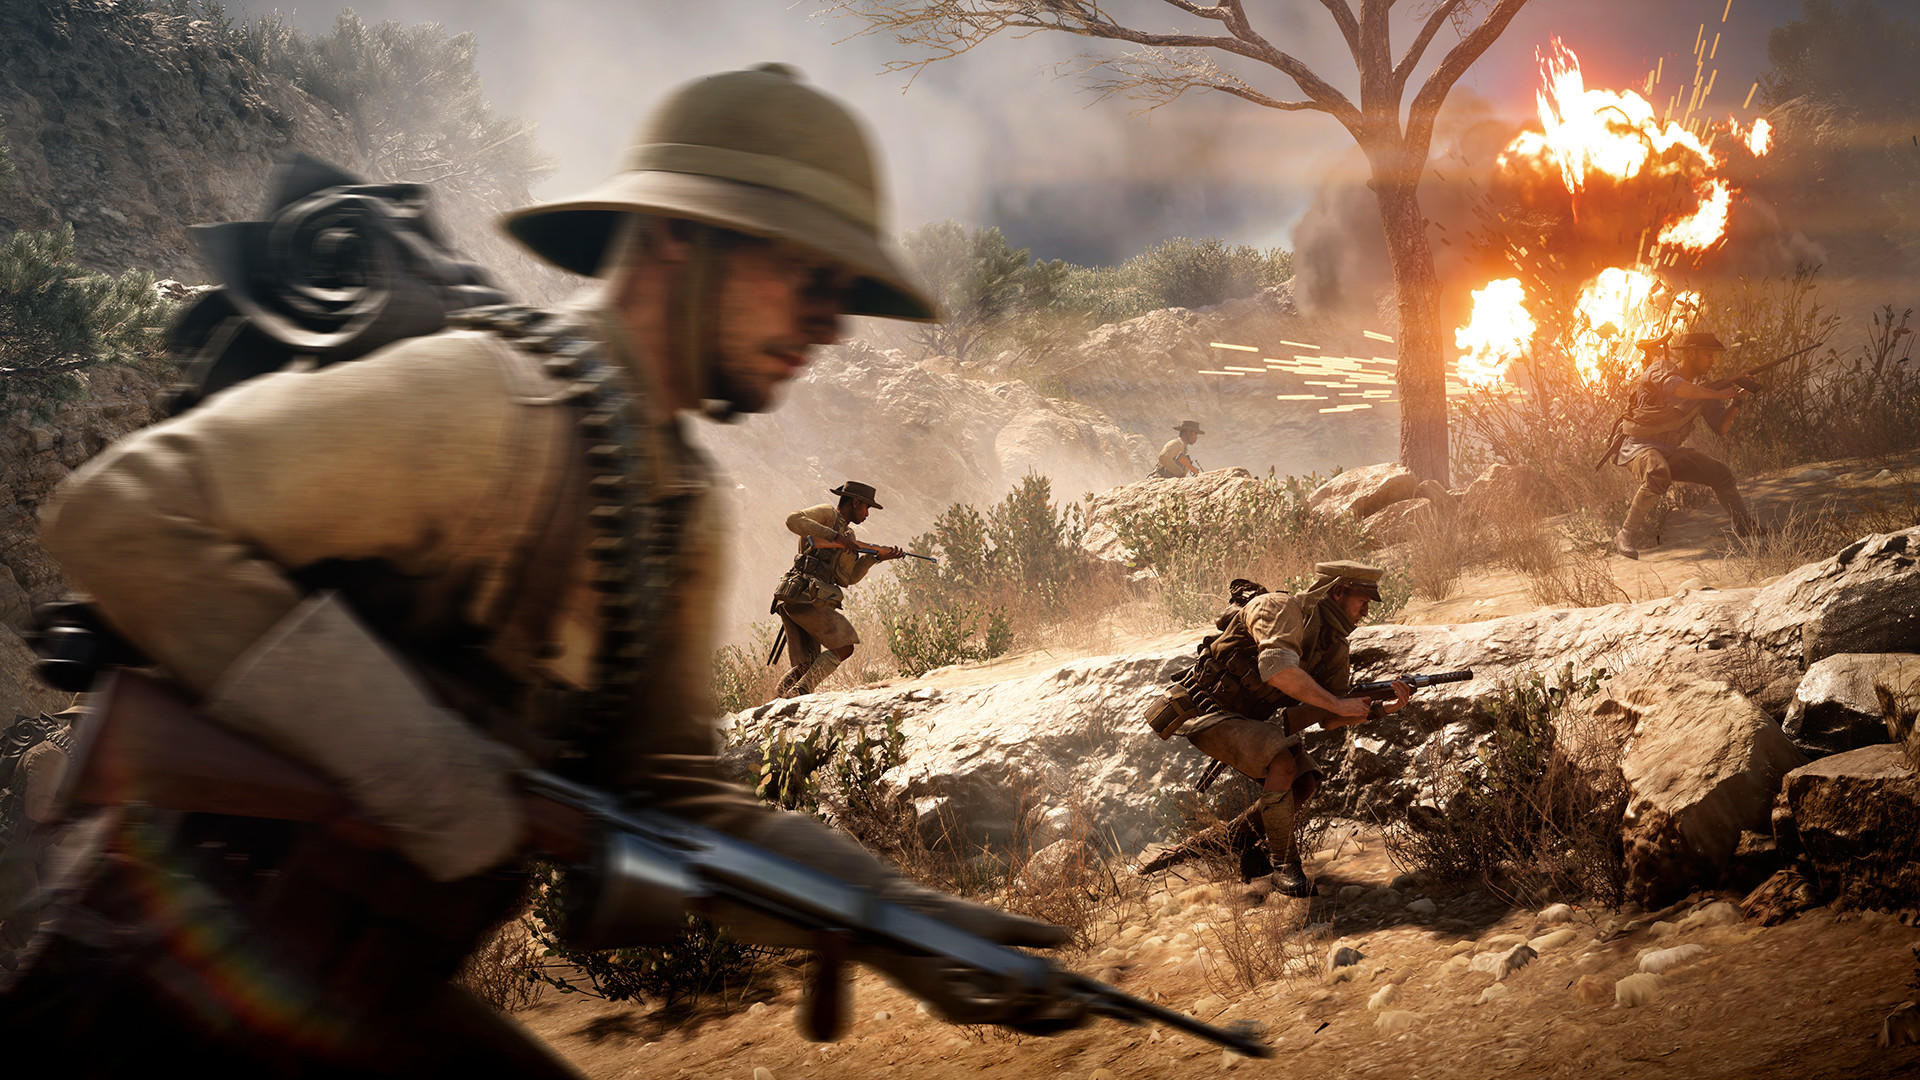 Battlefield™ 1 screenshot game